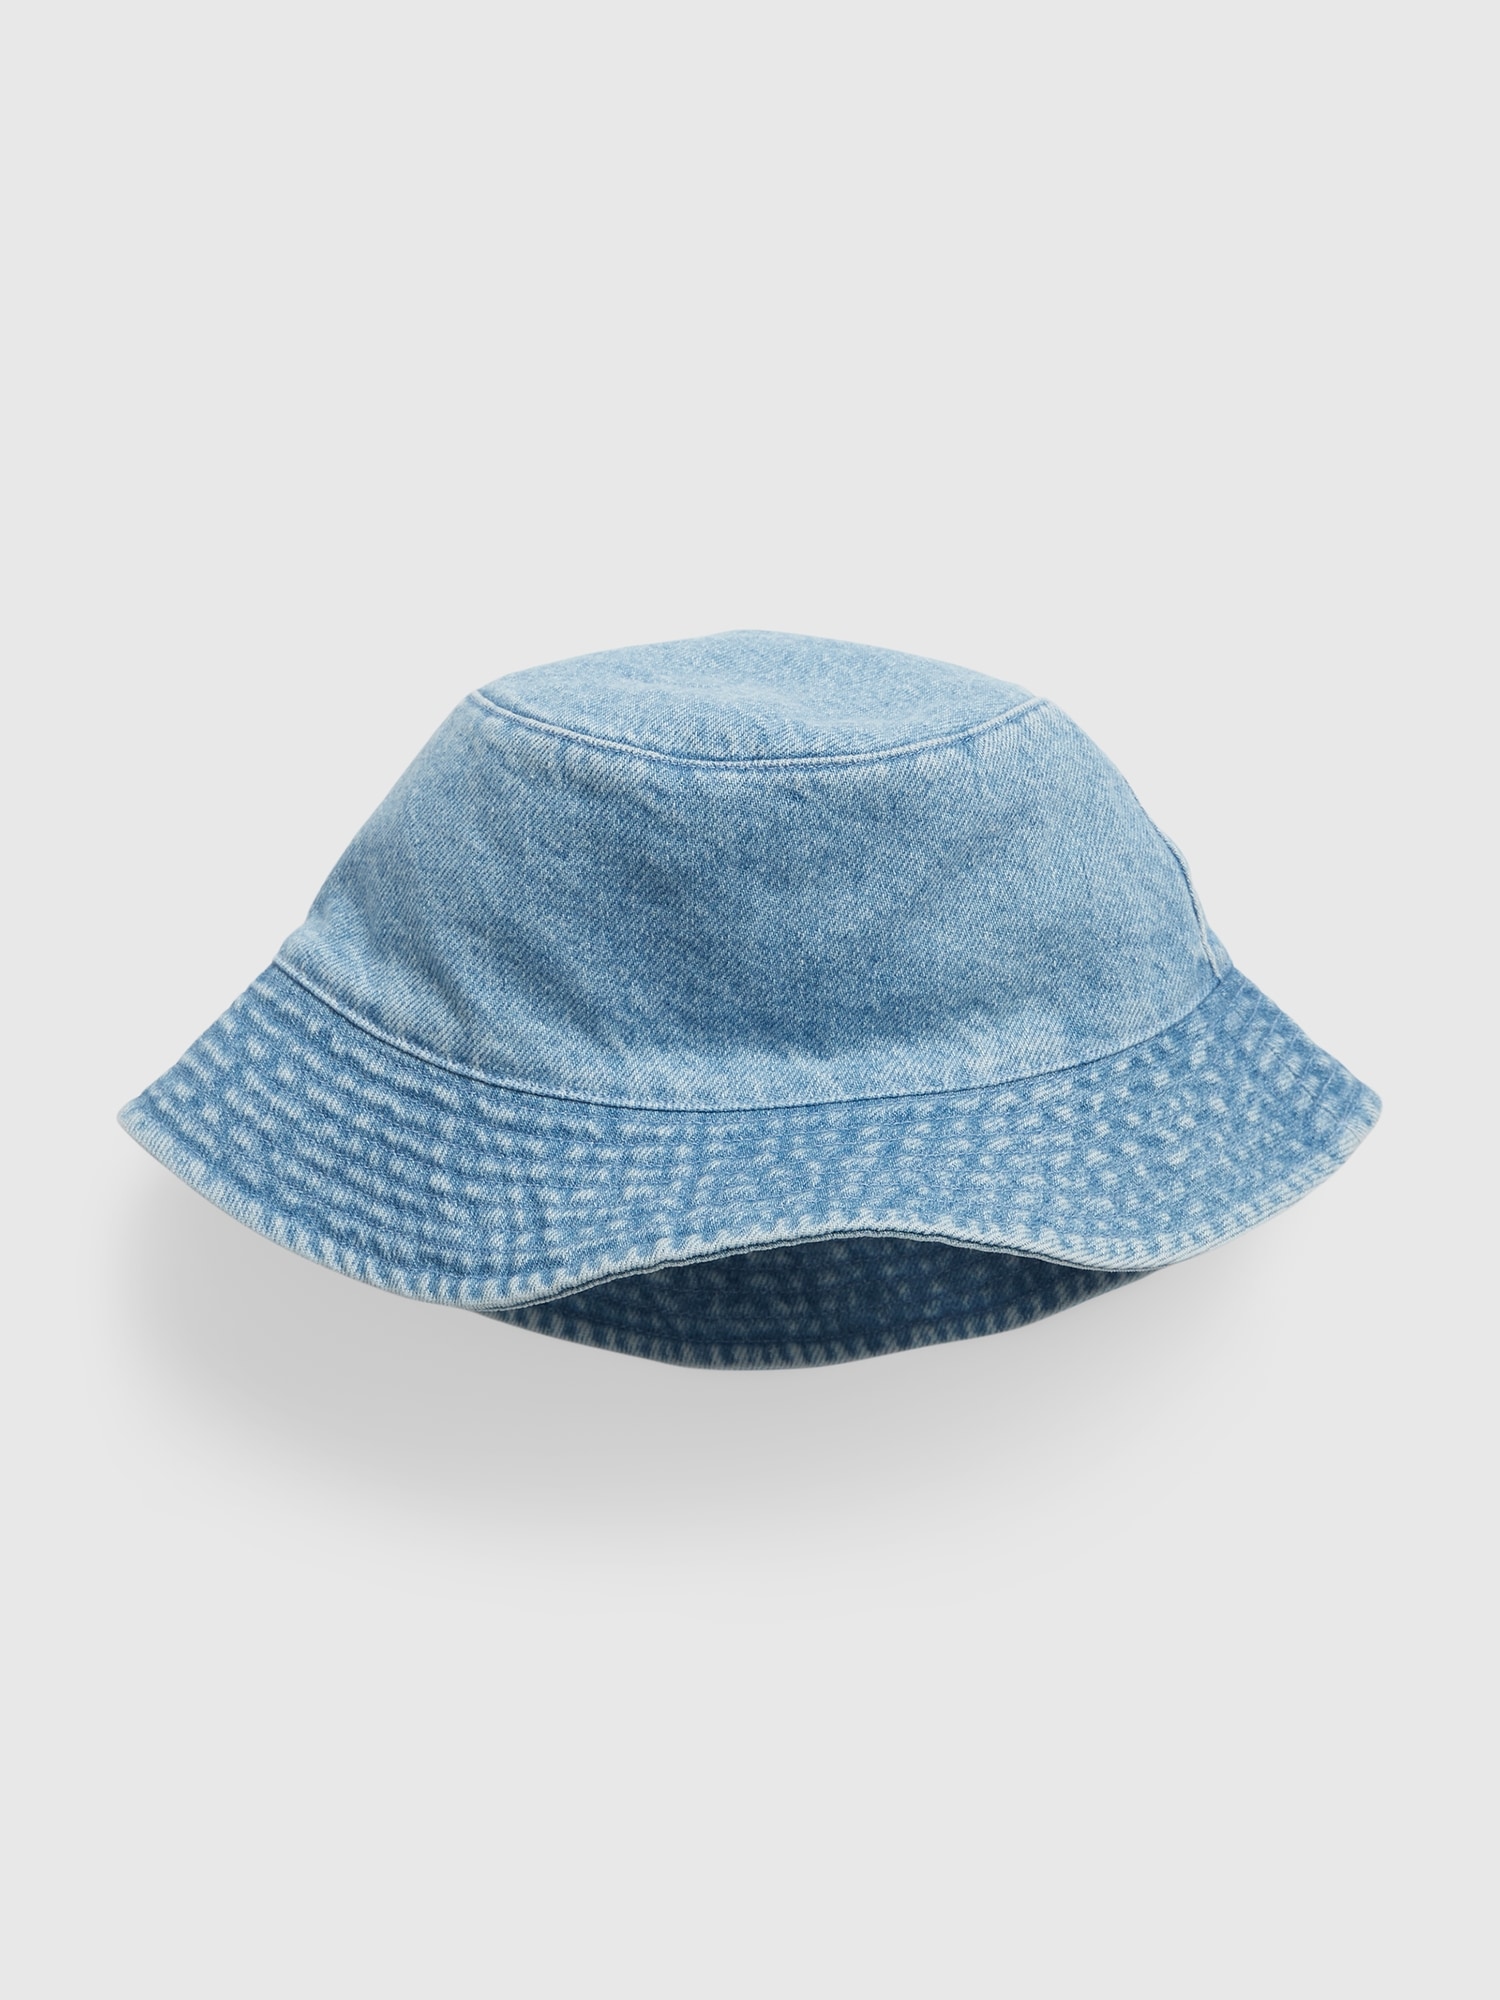 Gap Kids' Toddler Denim Bucket Hat With Washwell In Light Denim